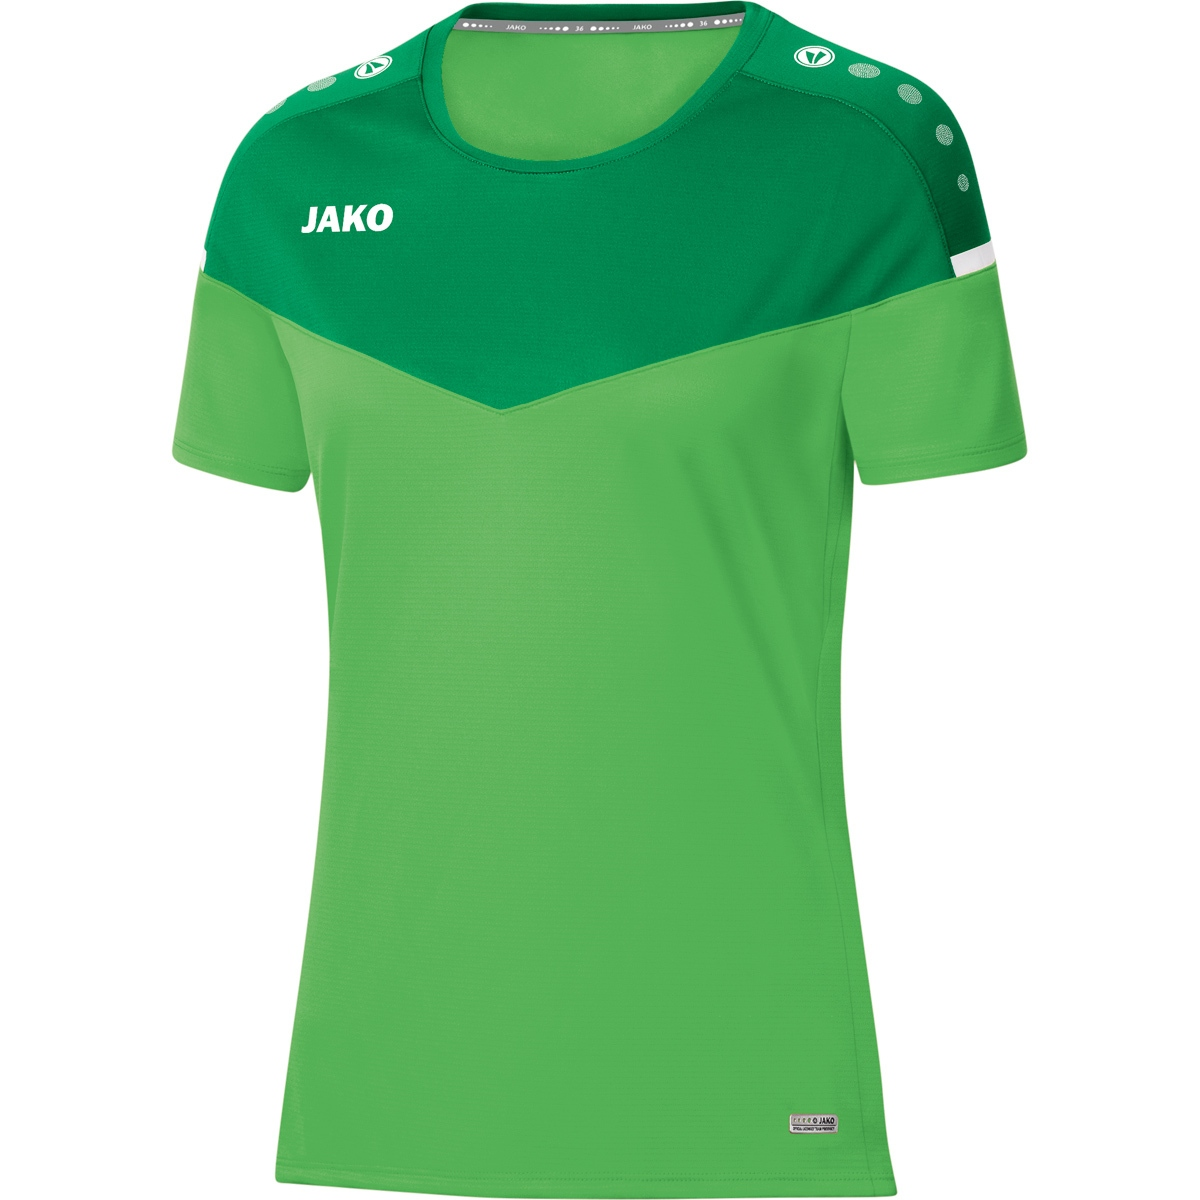 JAKO T-Shirt Champ green/sportgrün, Damen, soft Gr. 6120 38, 2.0